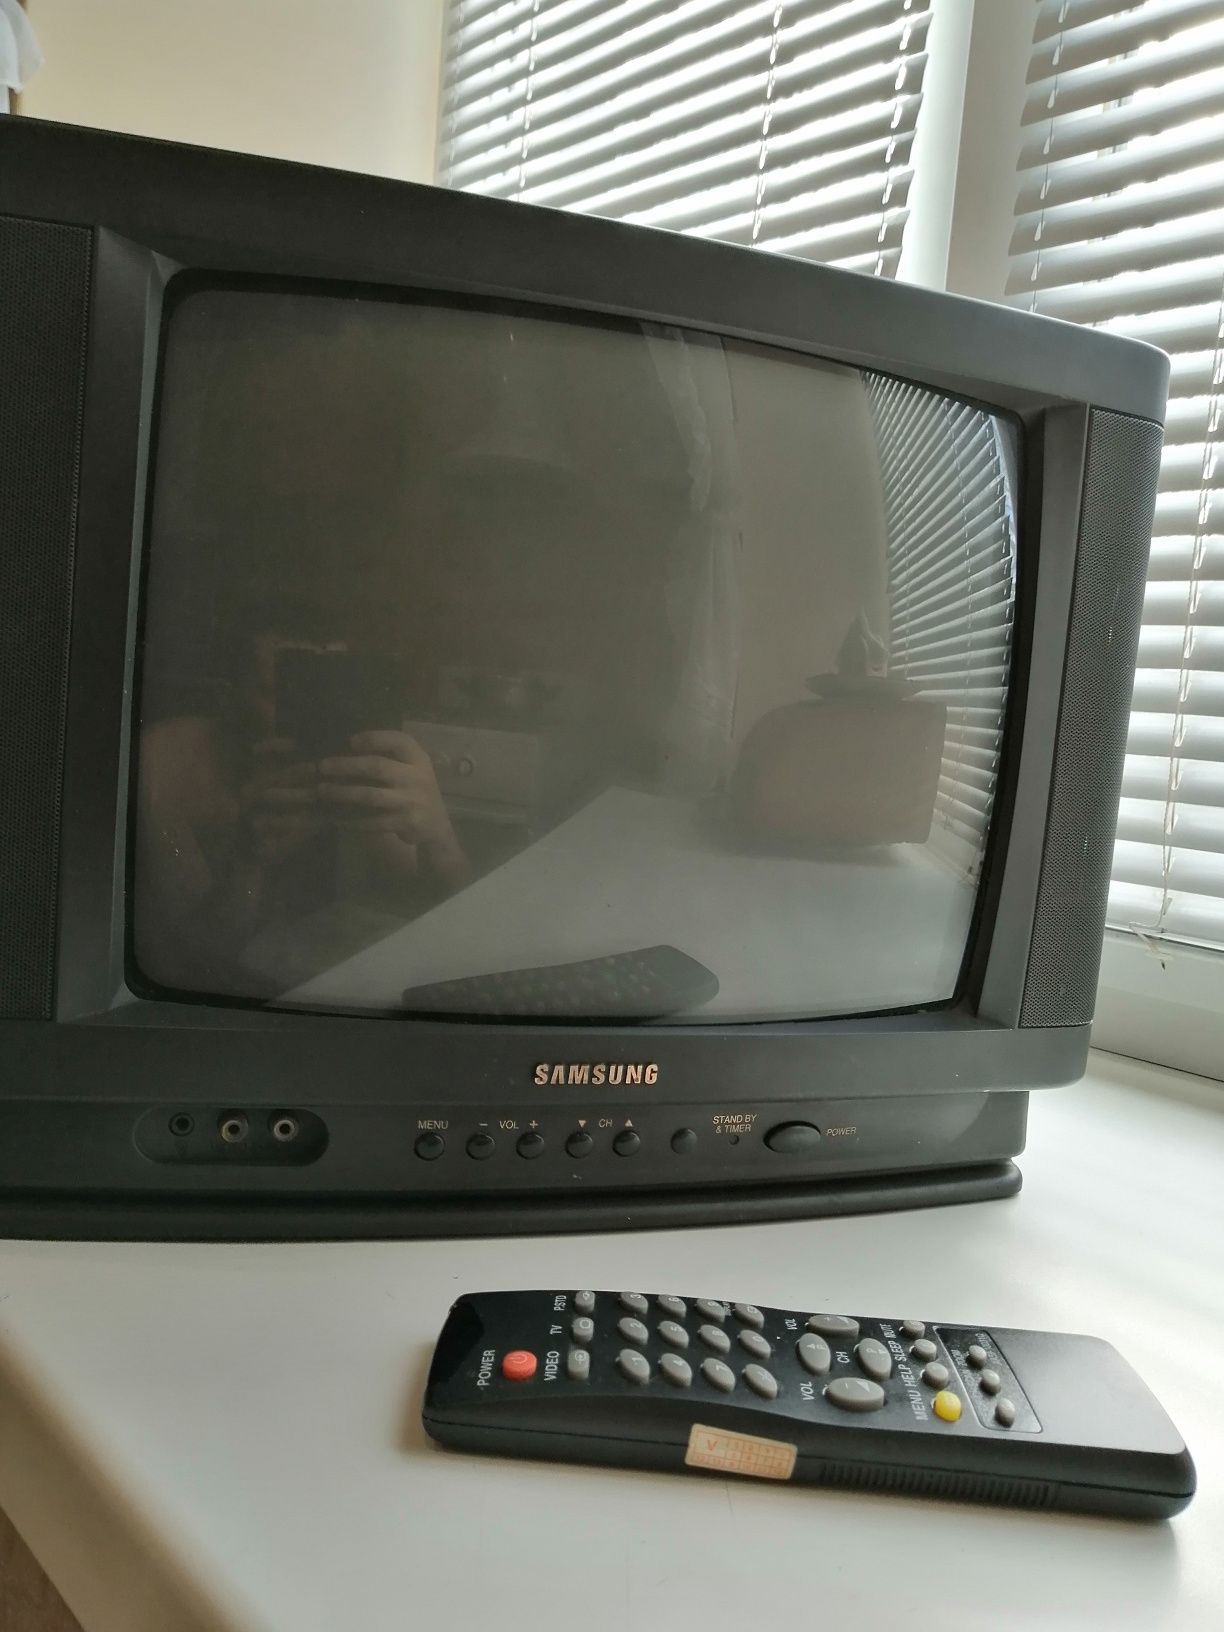 Телевизор Samsung диагональ - 35 см. Восстановление или запчасти!